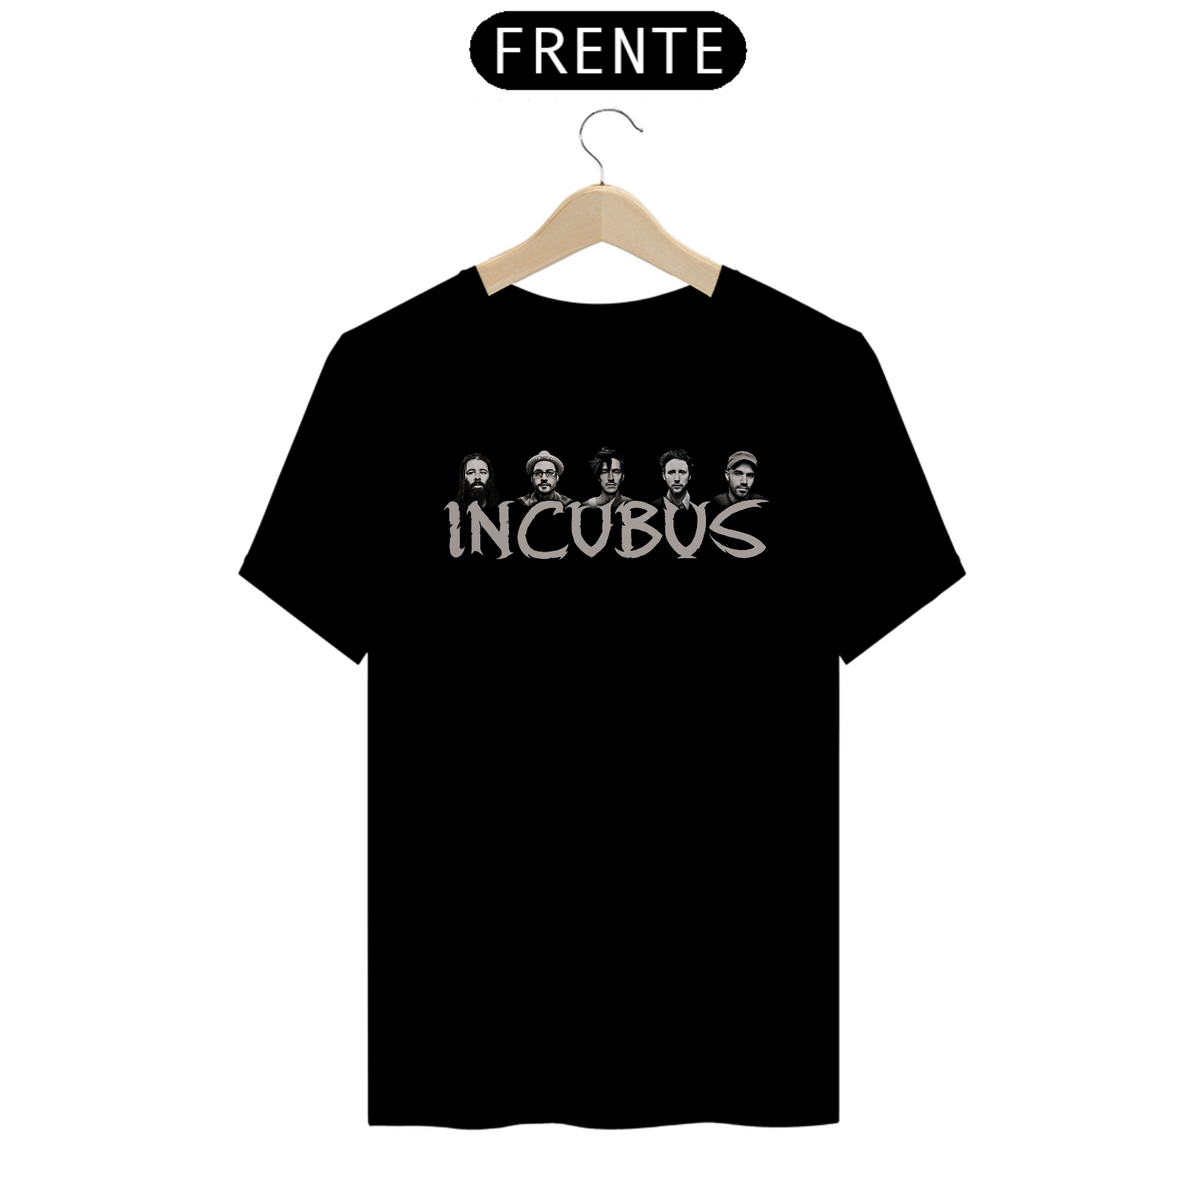 Nome do produto: Incubus